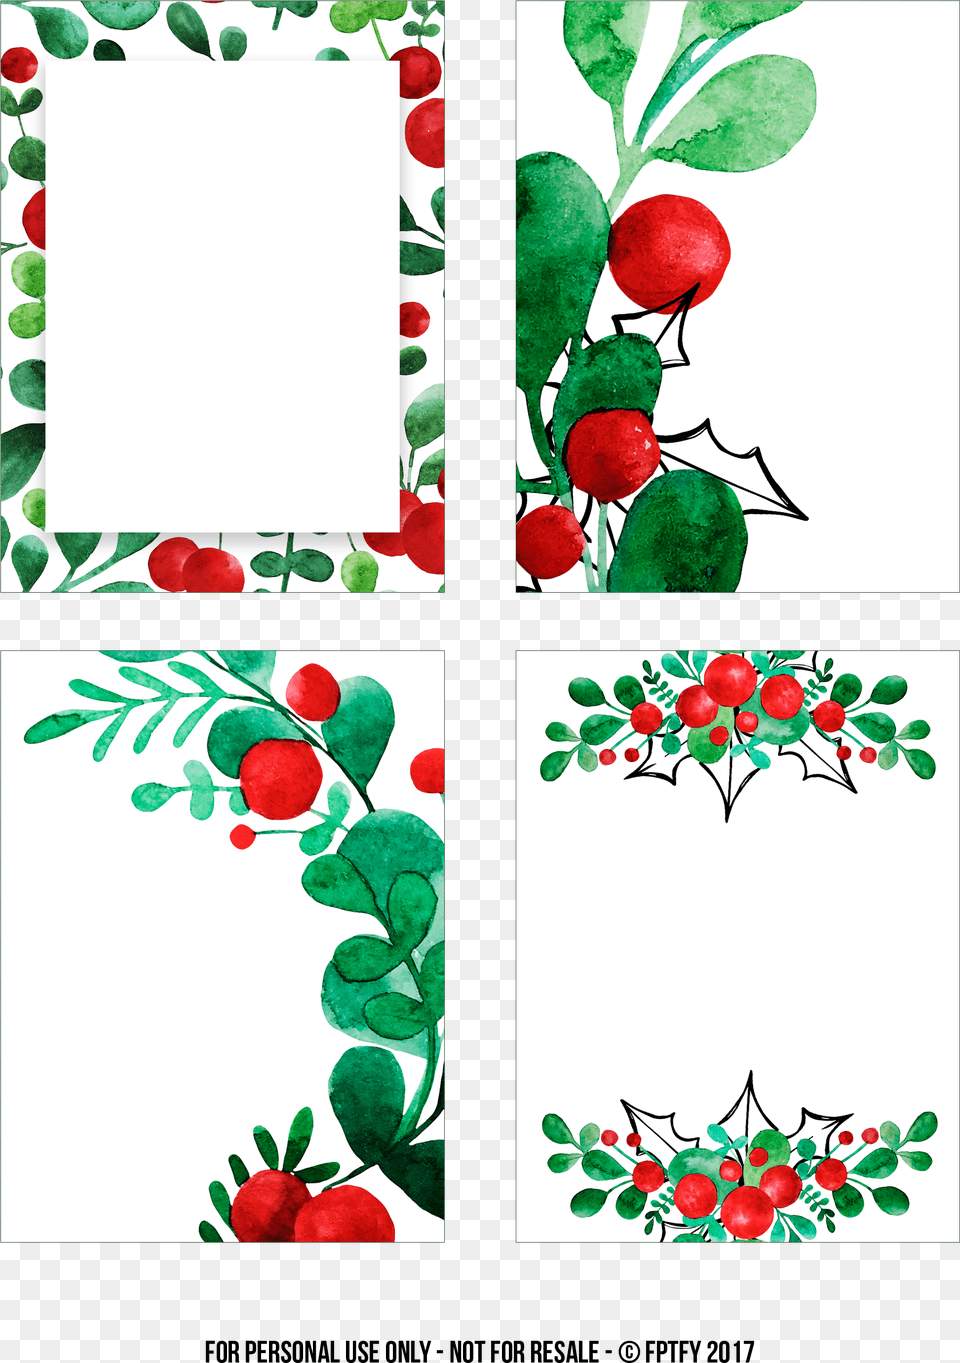 Download Pdf Jpeg Illustration, Leaf, Plant, Art, Graphics Free Transparent Png